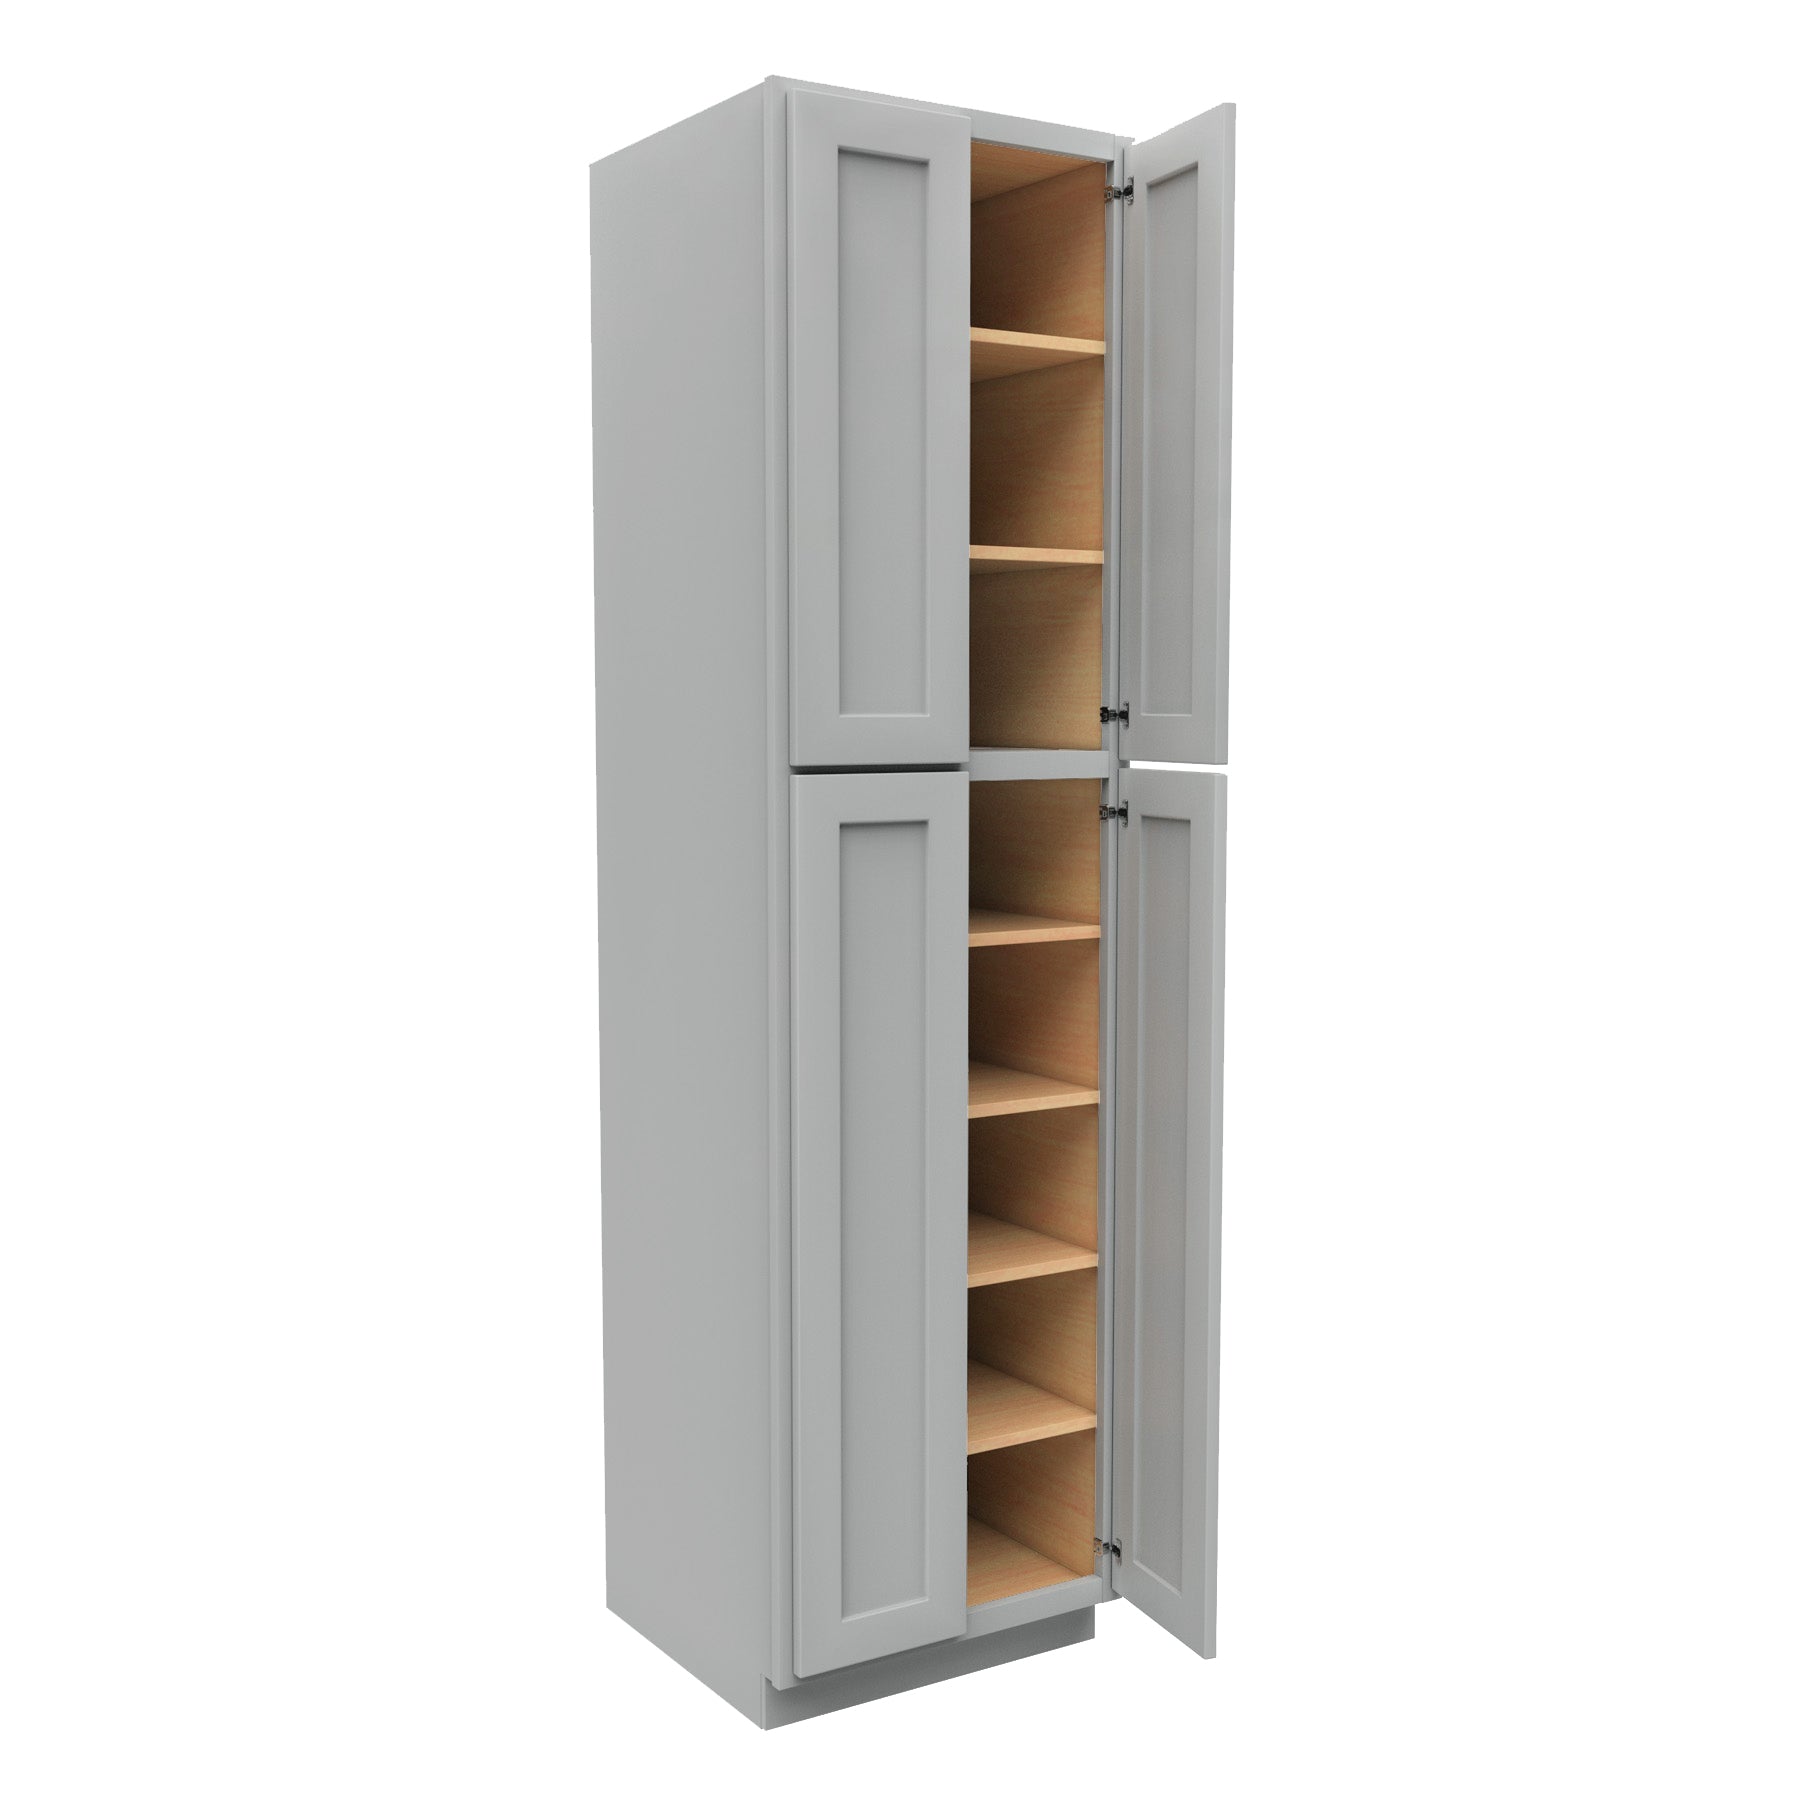 Luxor Misty Grey - Double Door Utility Cabinet | 24"W x 90"H x 24"D